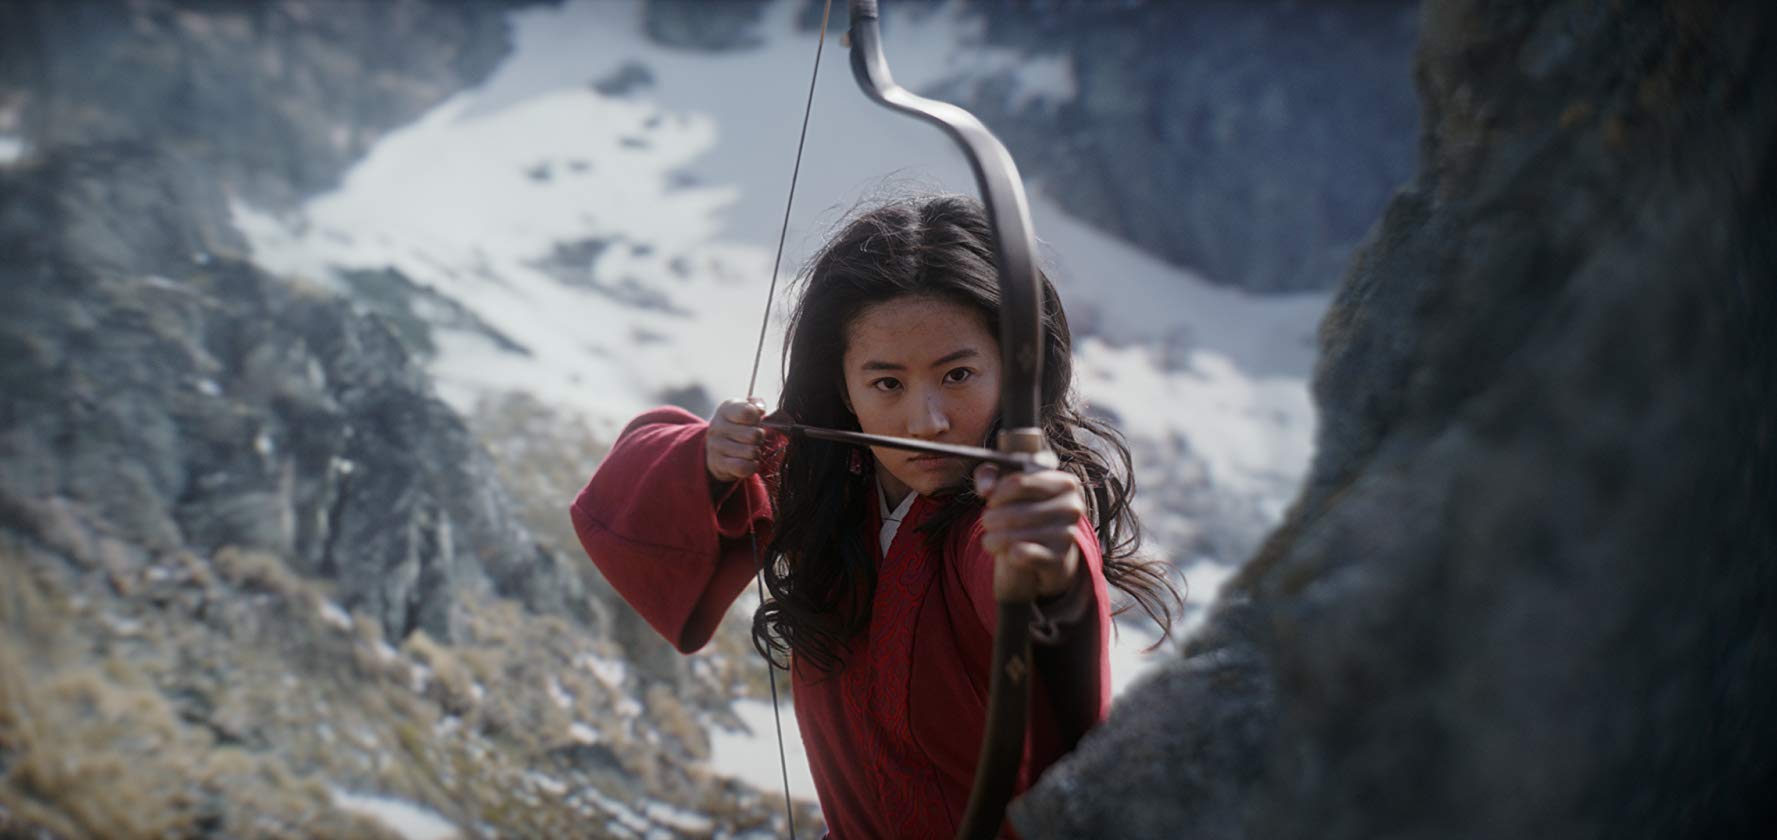 El estreno de la película "Mulan" fue suspendido en China debido al coronavirus. (Foto Prensa Libre: IMDB).